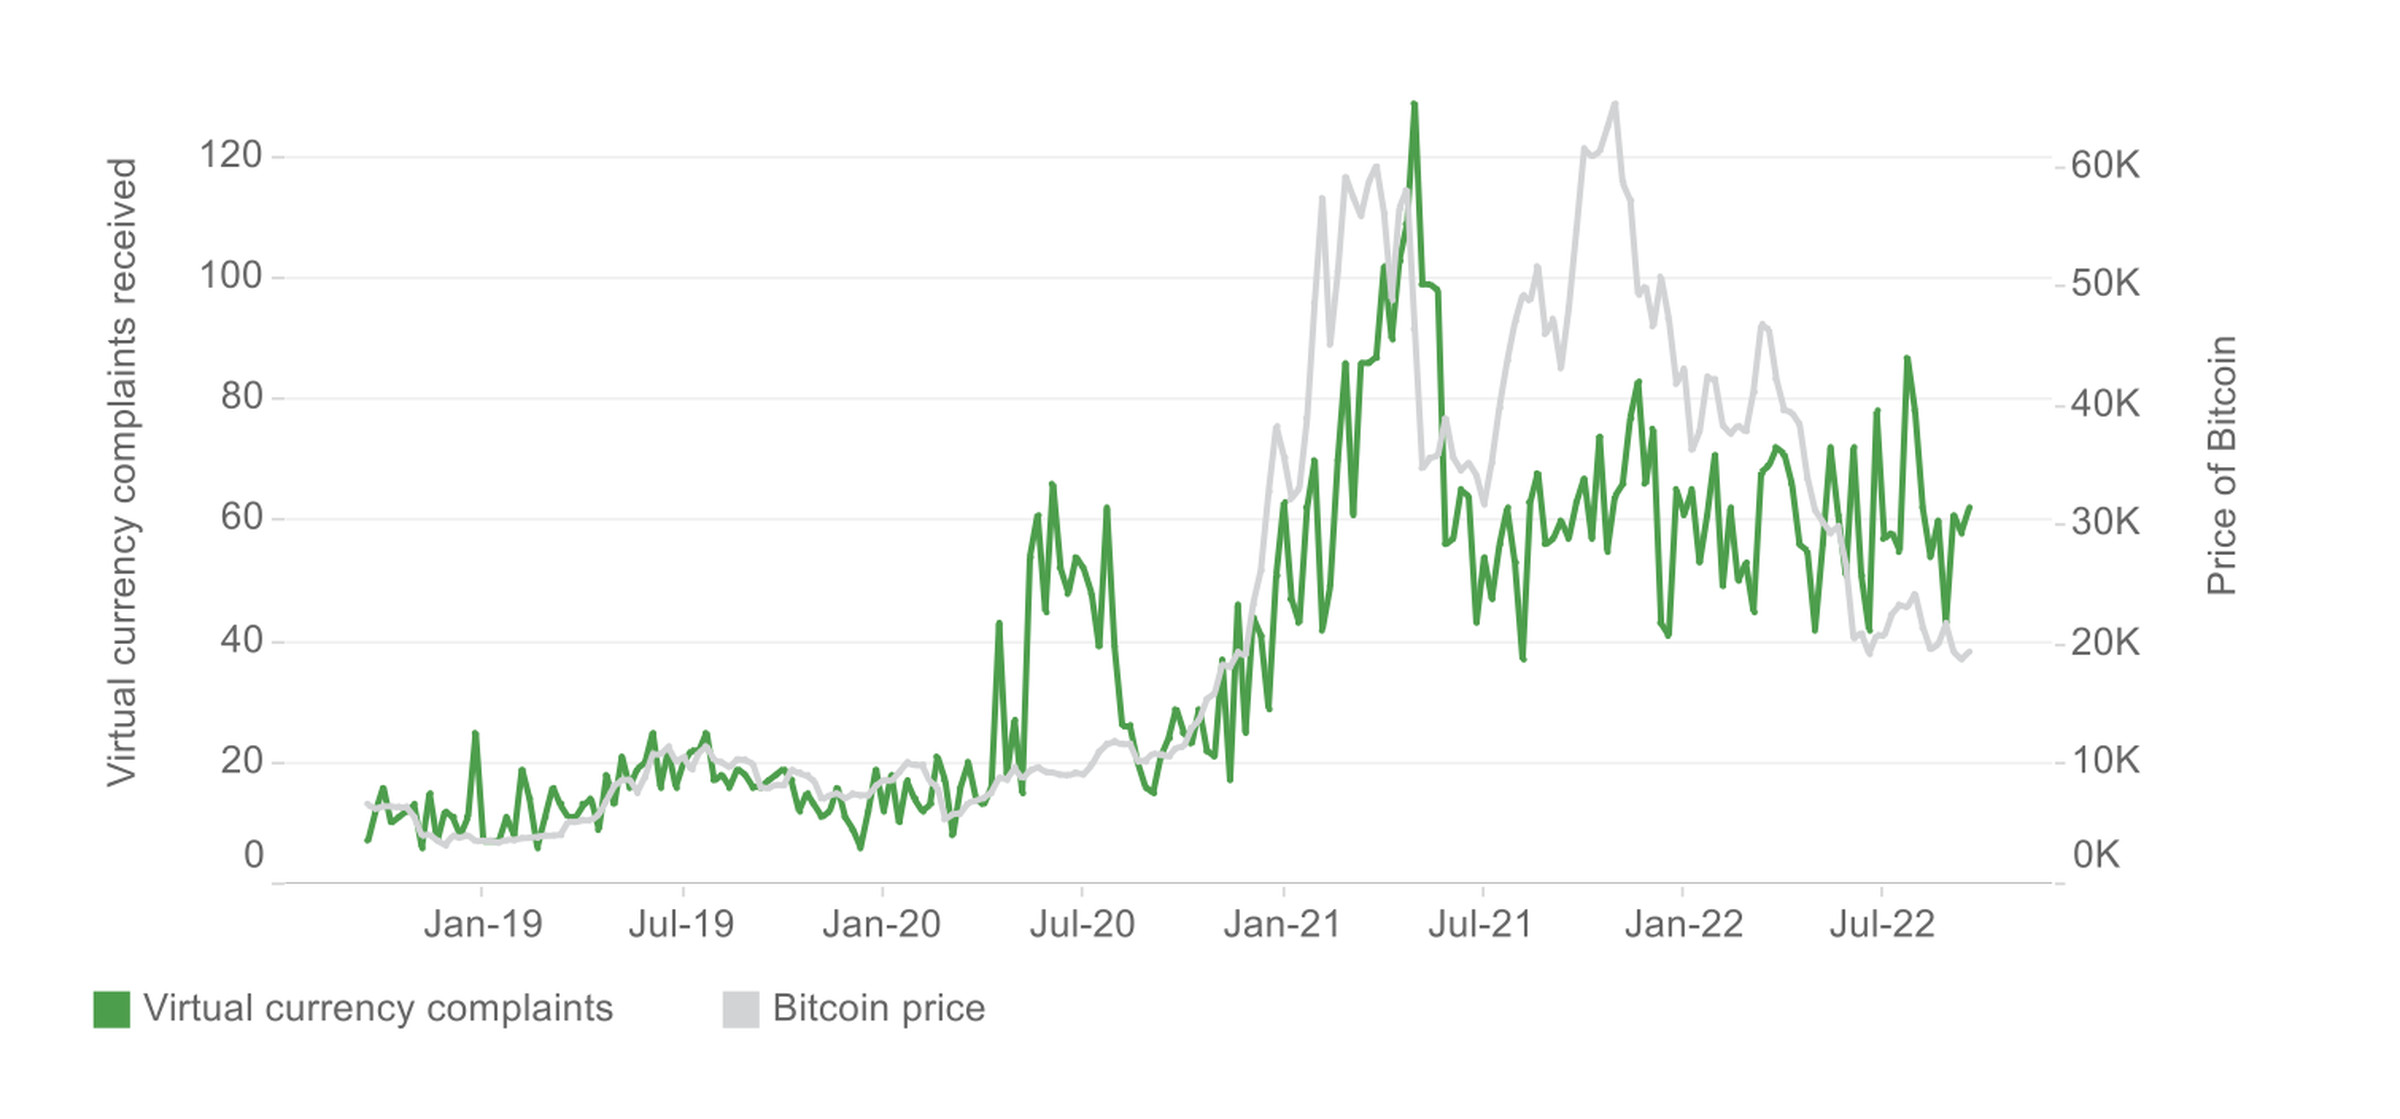 Gráfico que muestra el aumento del precio de Bitcoin entre enero de 2019 y julio de 2022, junto con la cantidad de quejas sobre monedas virtuales.